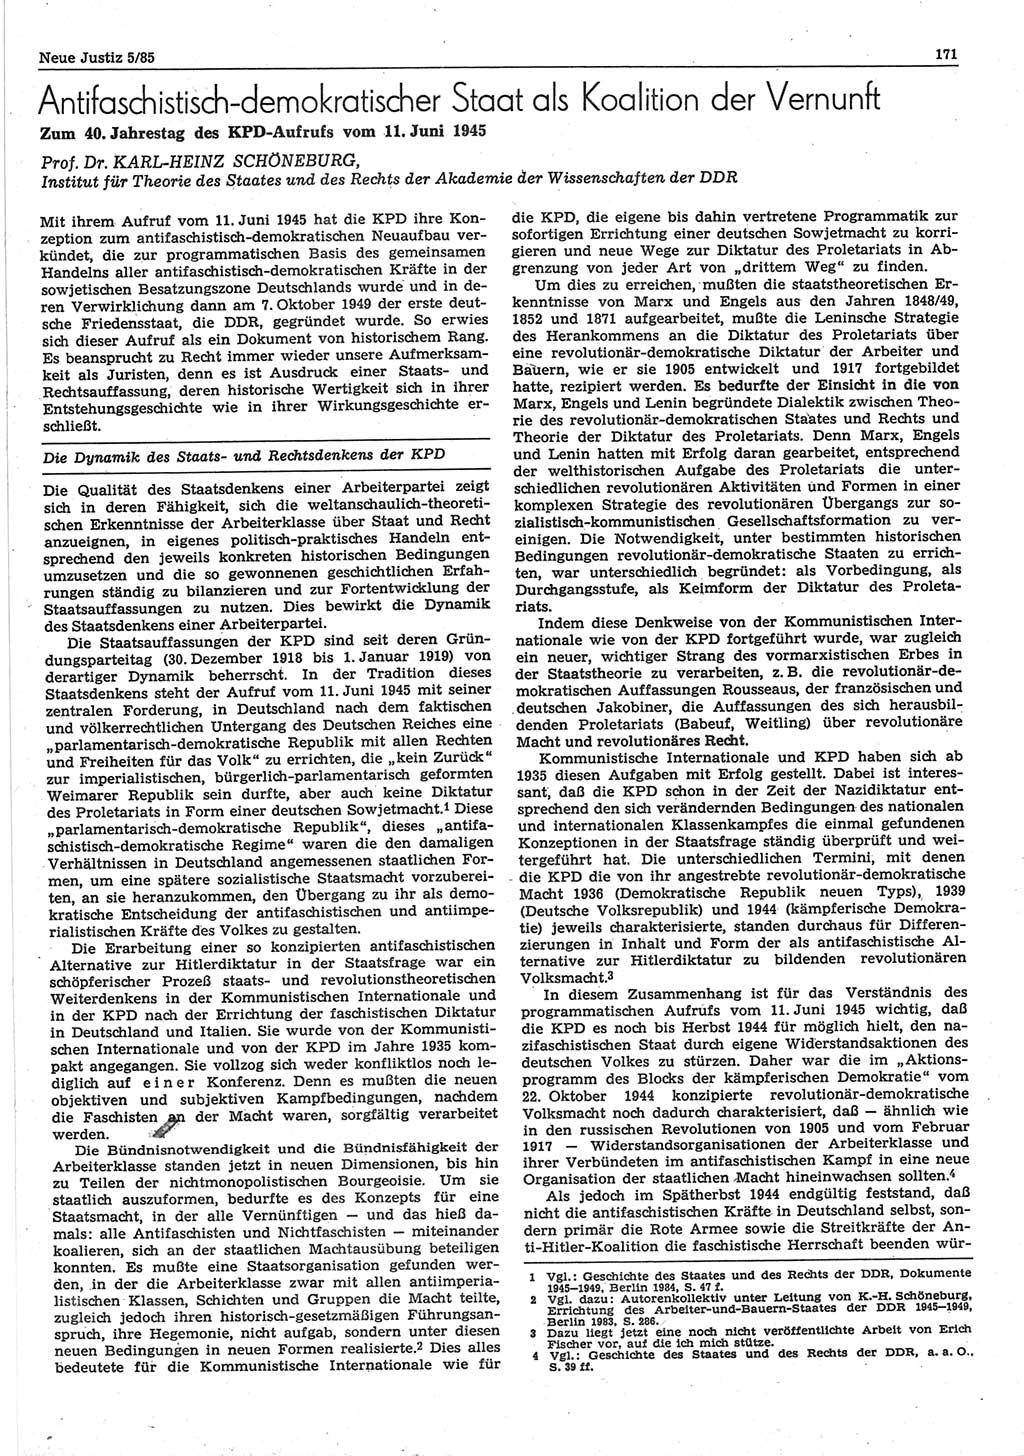 Neue Justiz (NJ), Zeitschrift für sozialistisches Recht und Gesetzlichkeit [Deutsche Demokratische Republik (DDR)], 39. Jahrgang 1985, Seite 171 (NJ DDR 1985, S. 171)